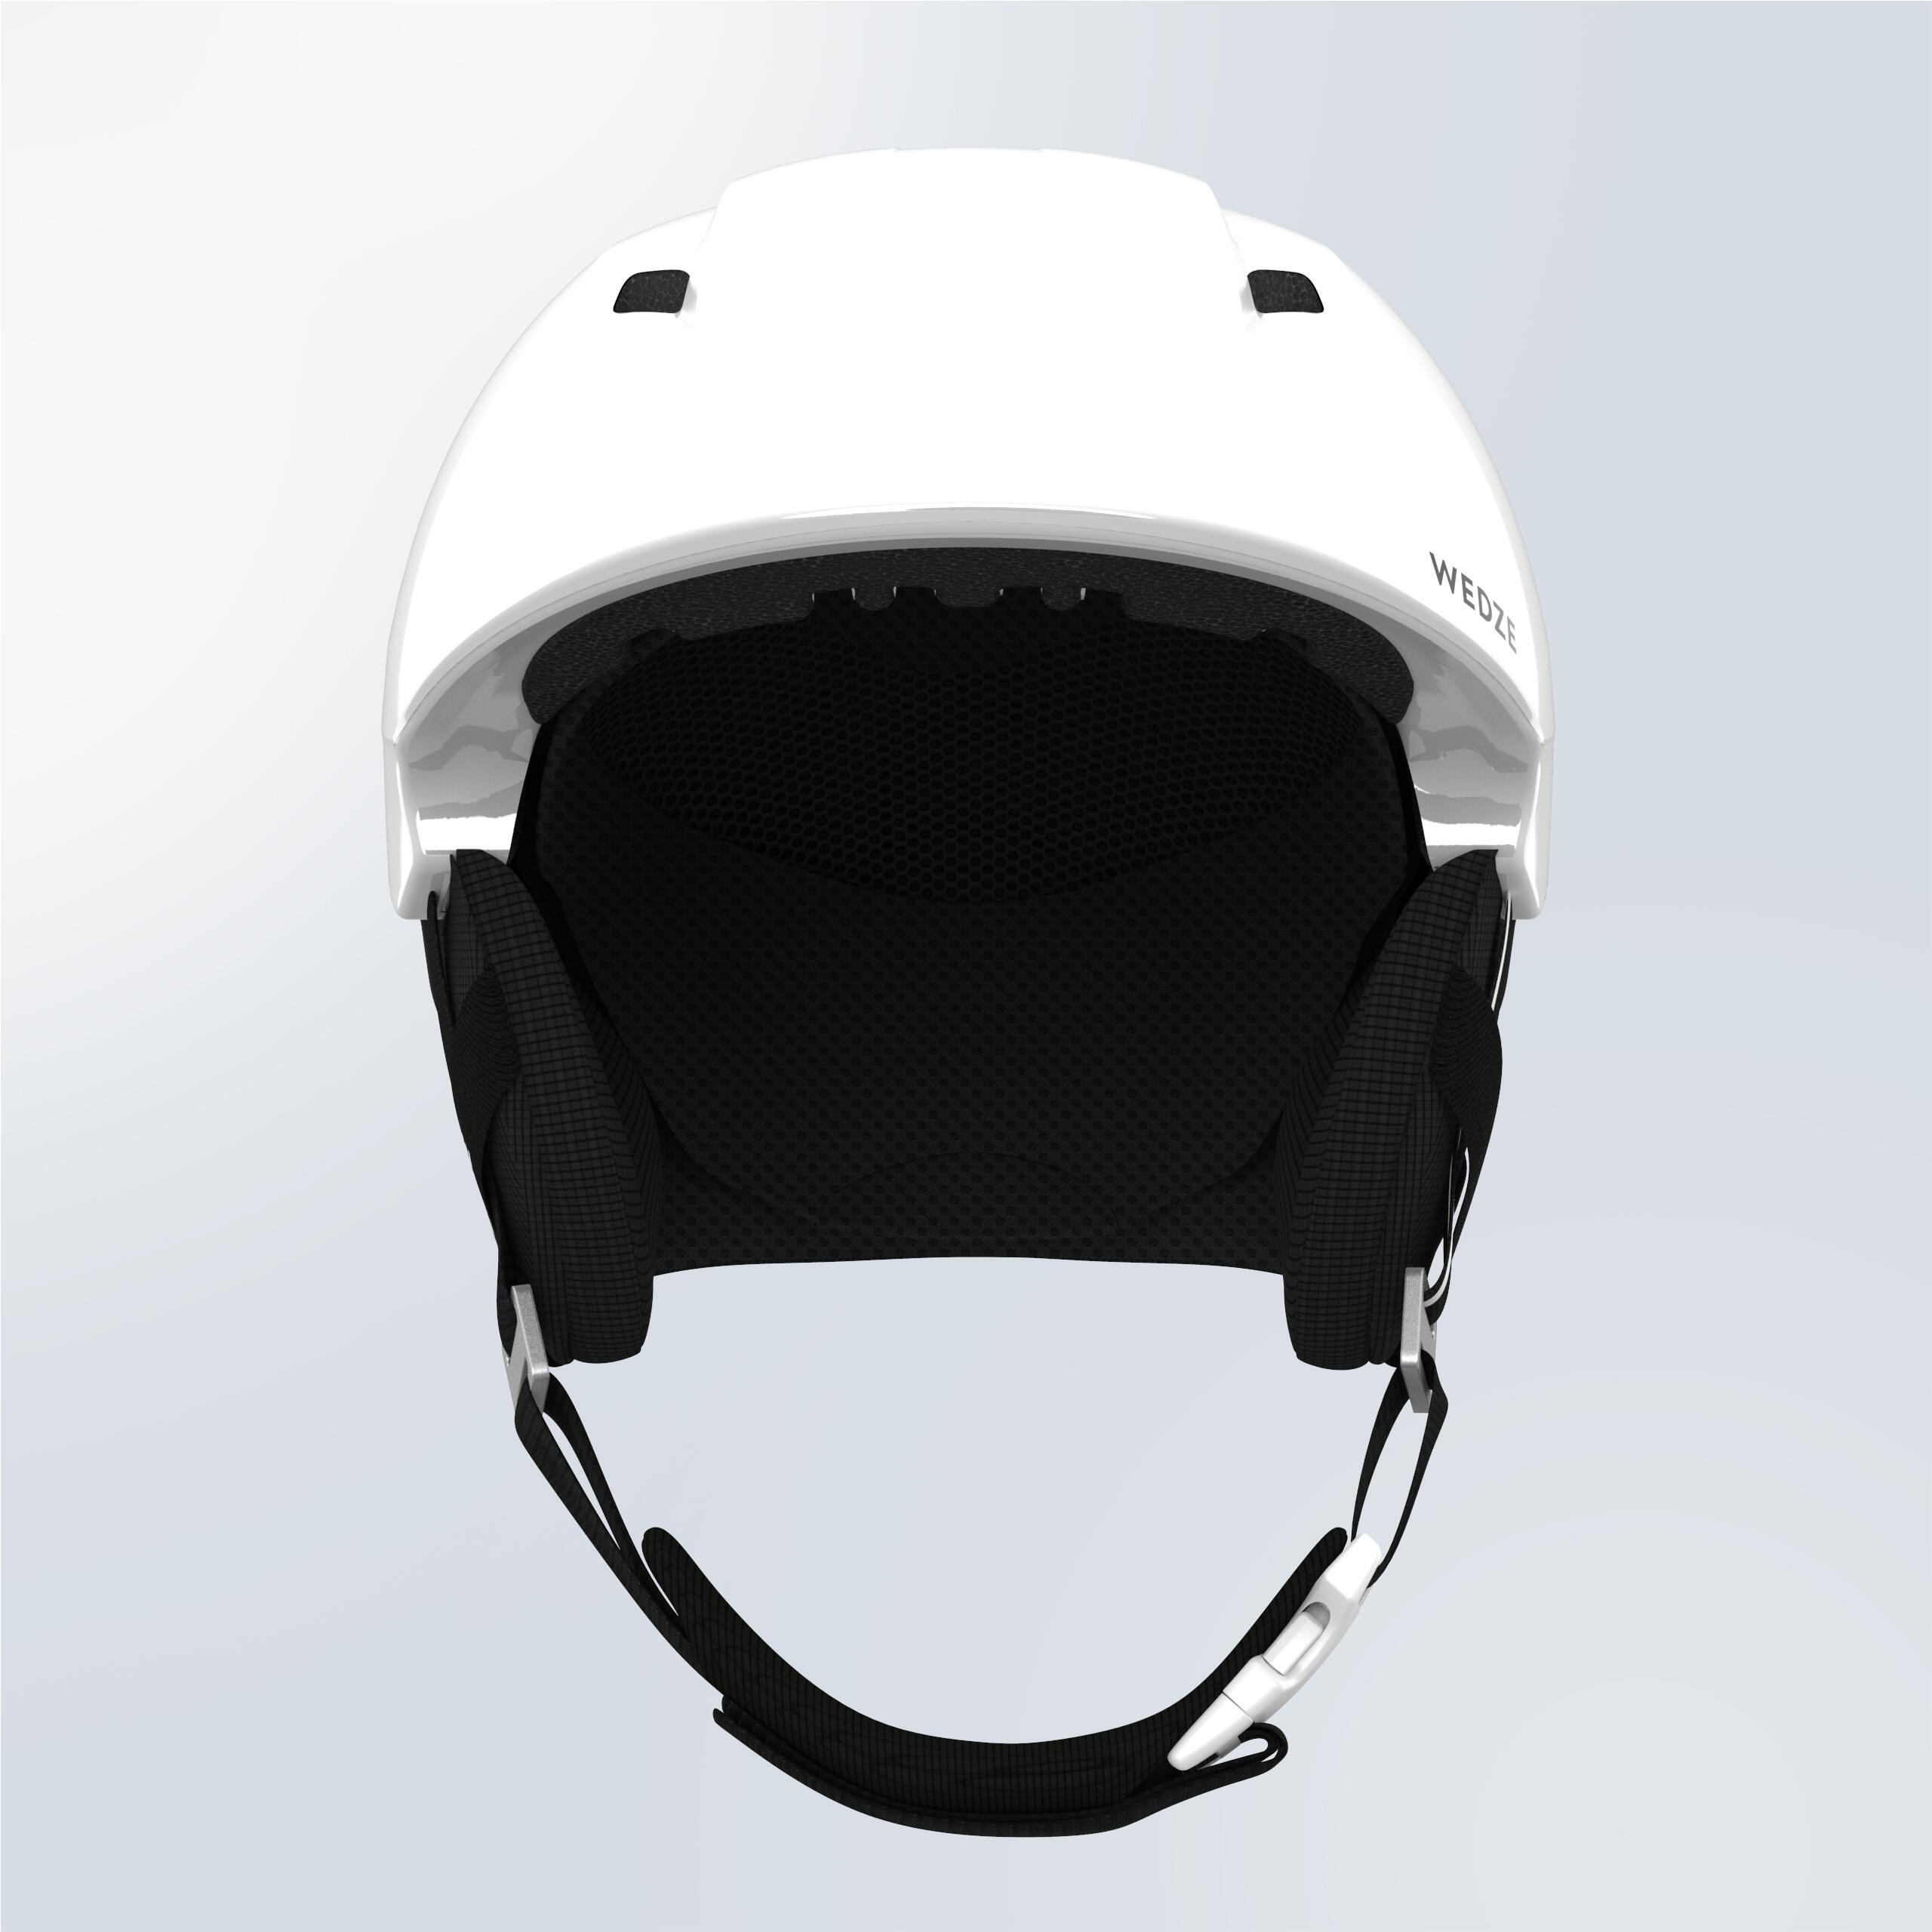 Ski Helmet - PST 580 Black/White - Snow white, graphite black - Wedze ...